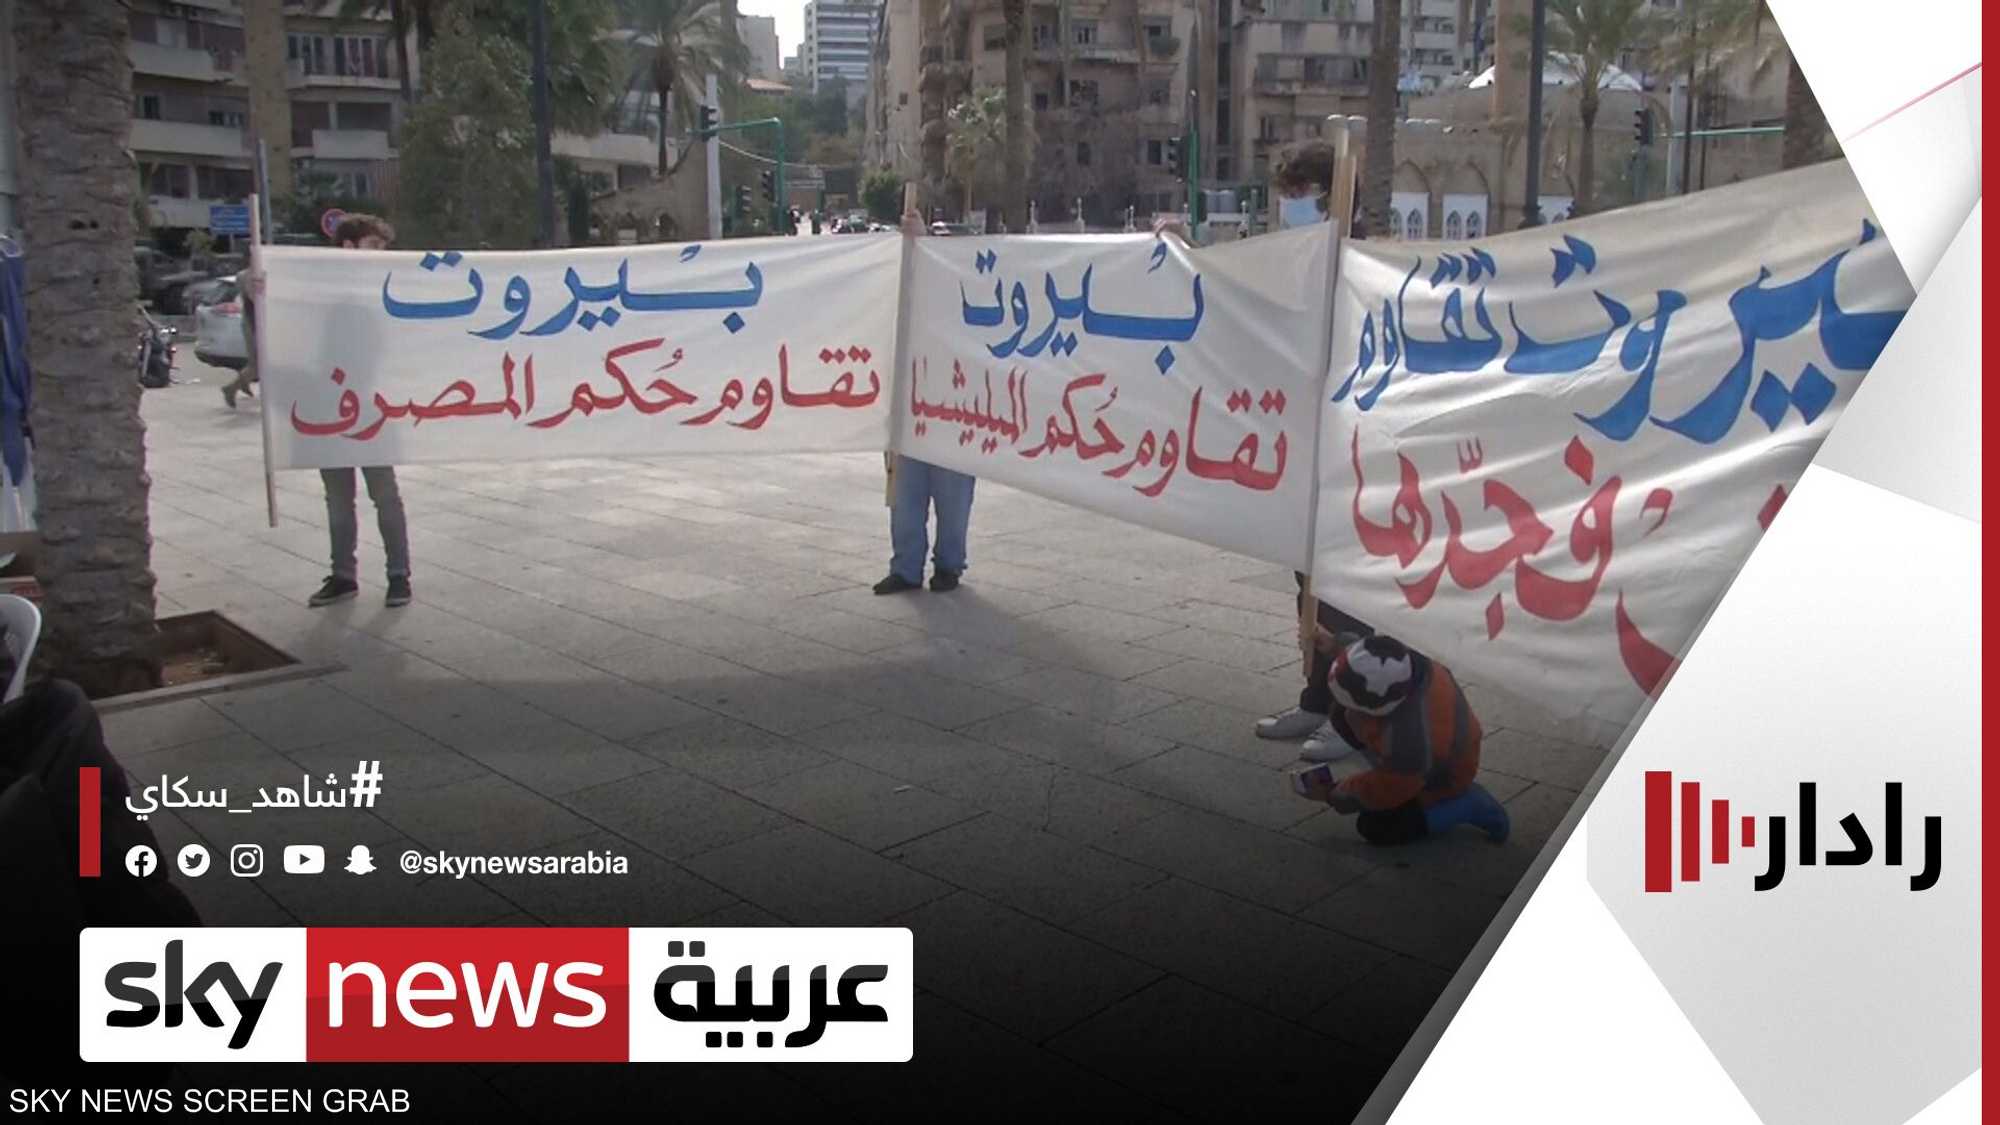 حملة "بيروت تقاوم" لمواجهة القوى السياسية